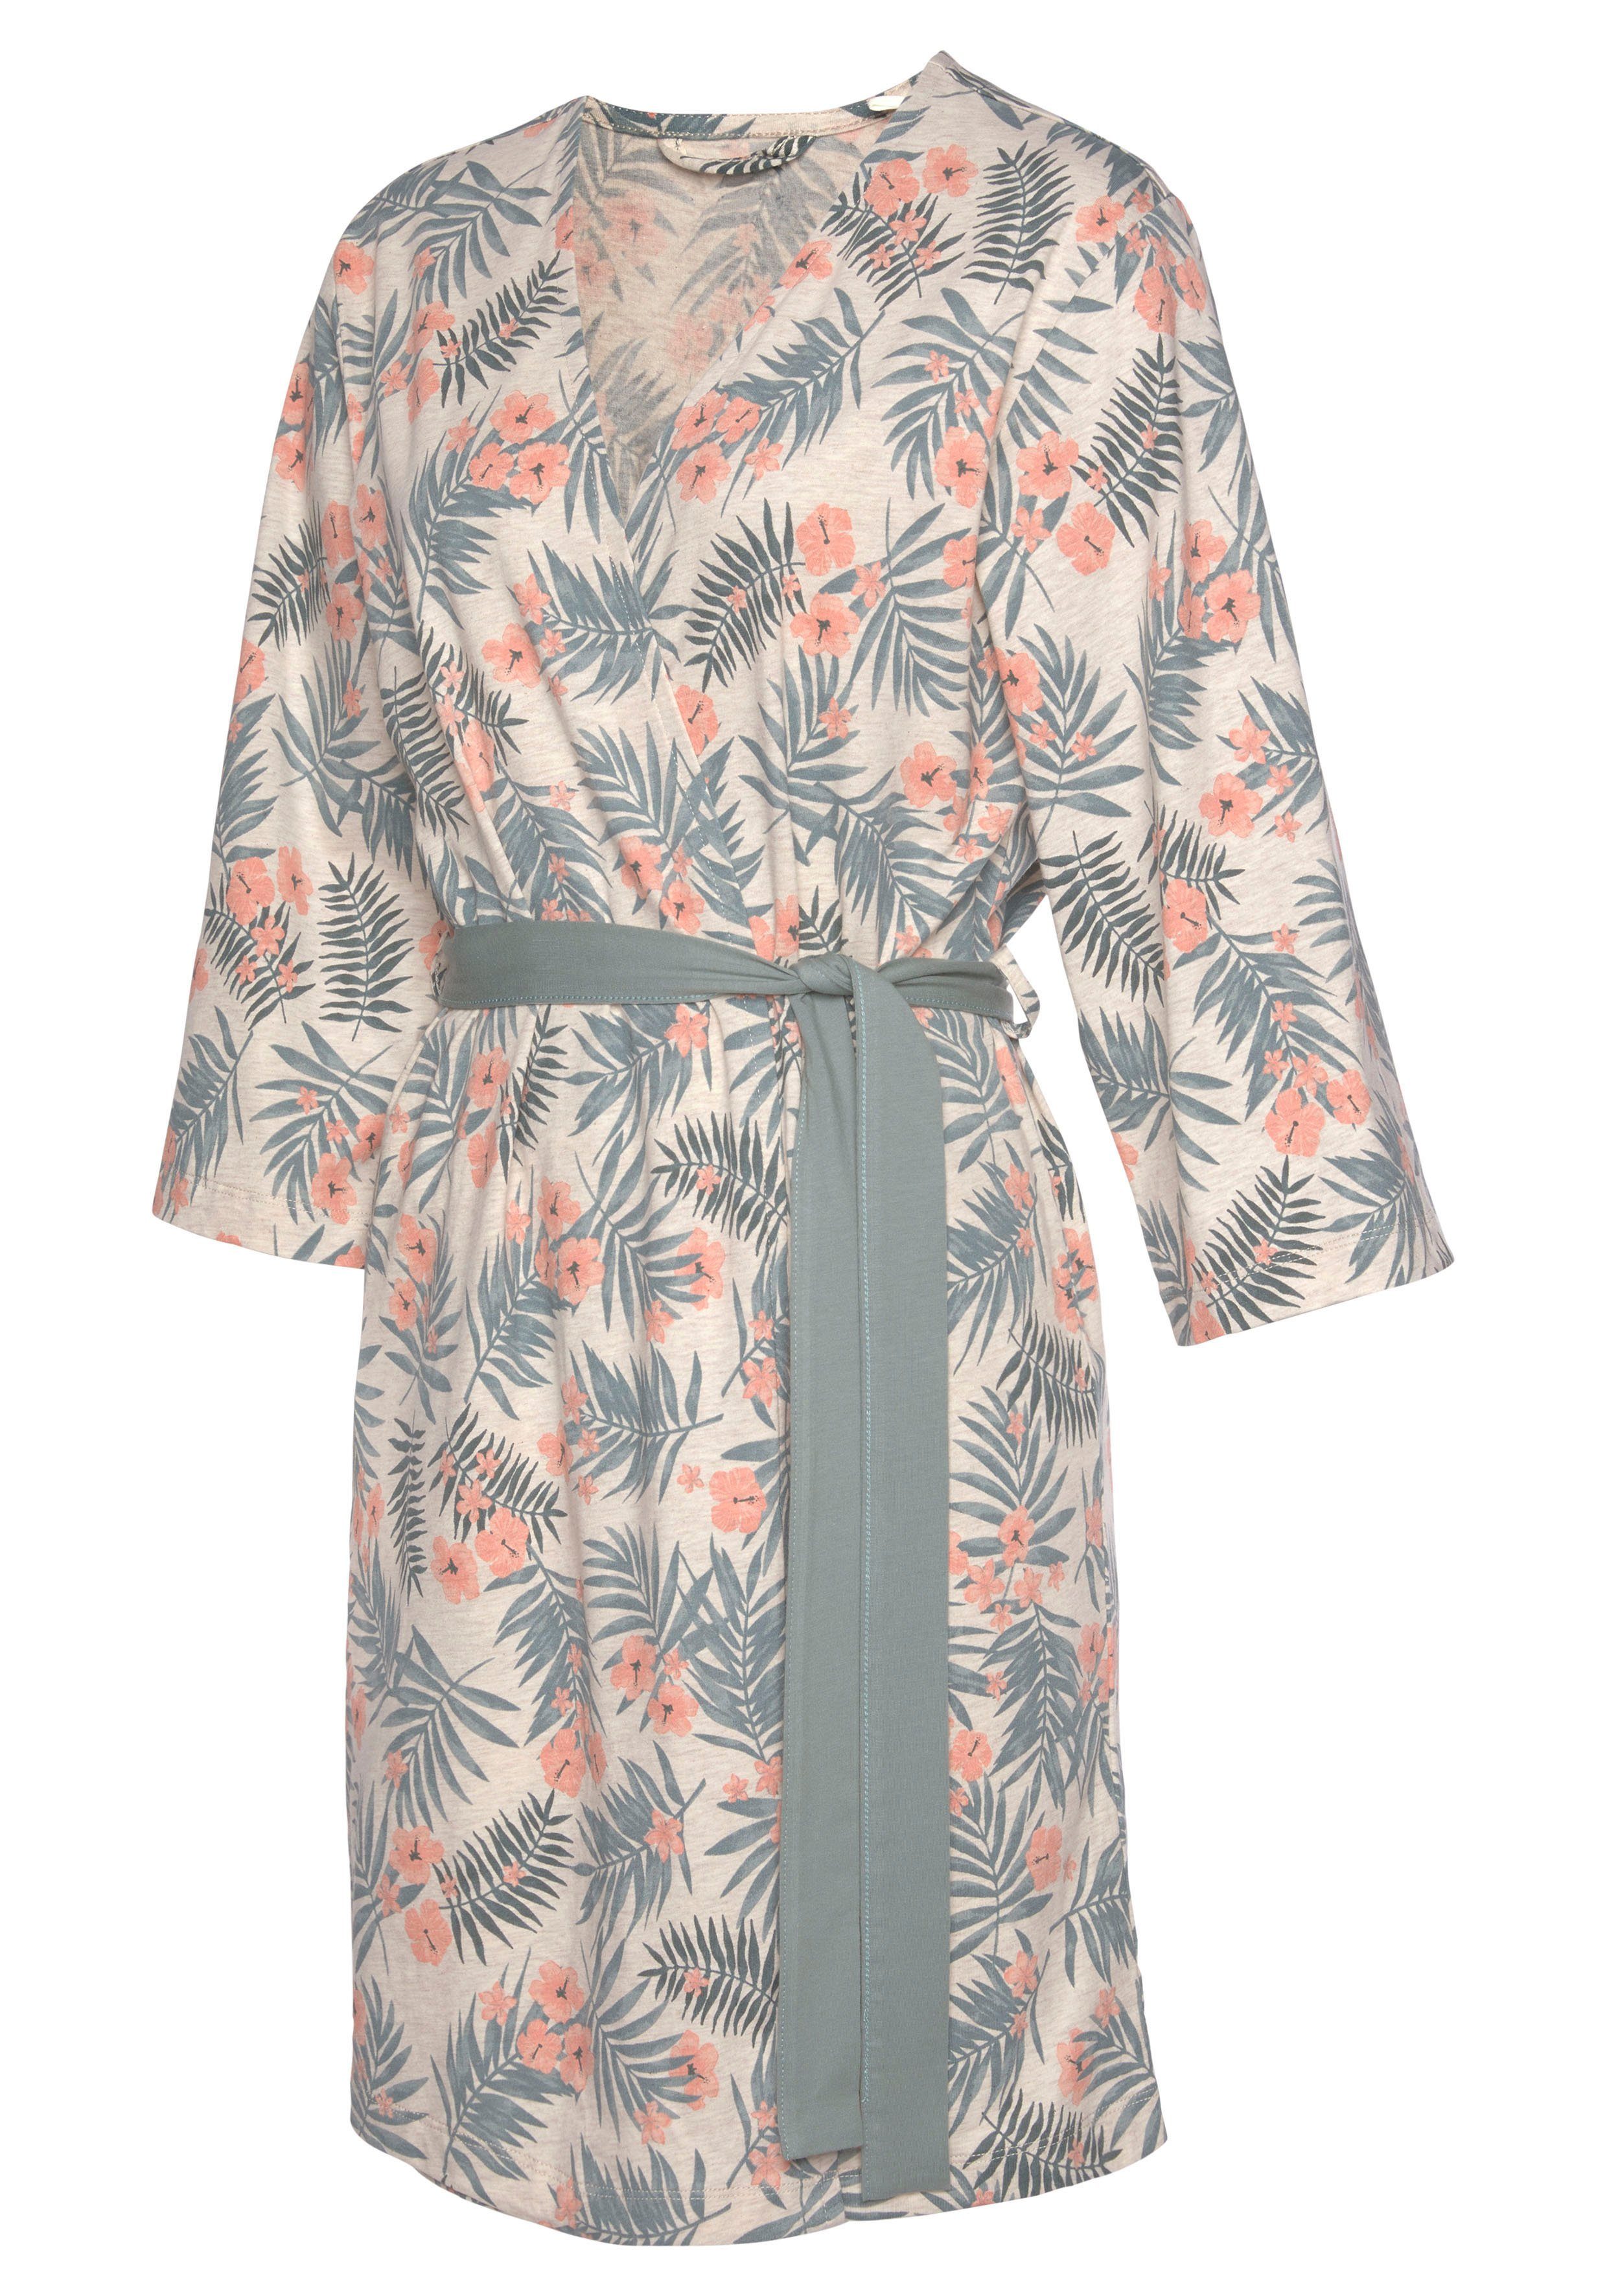 Allover-Druck Kimono, sand-grün uni und Kurzform, Gürtel, in LASCANA Baumwolle,